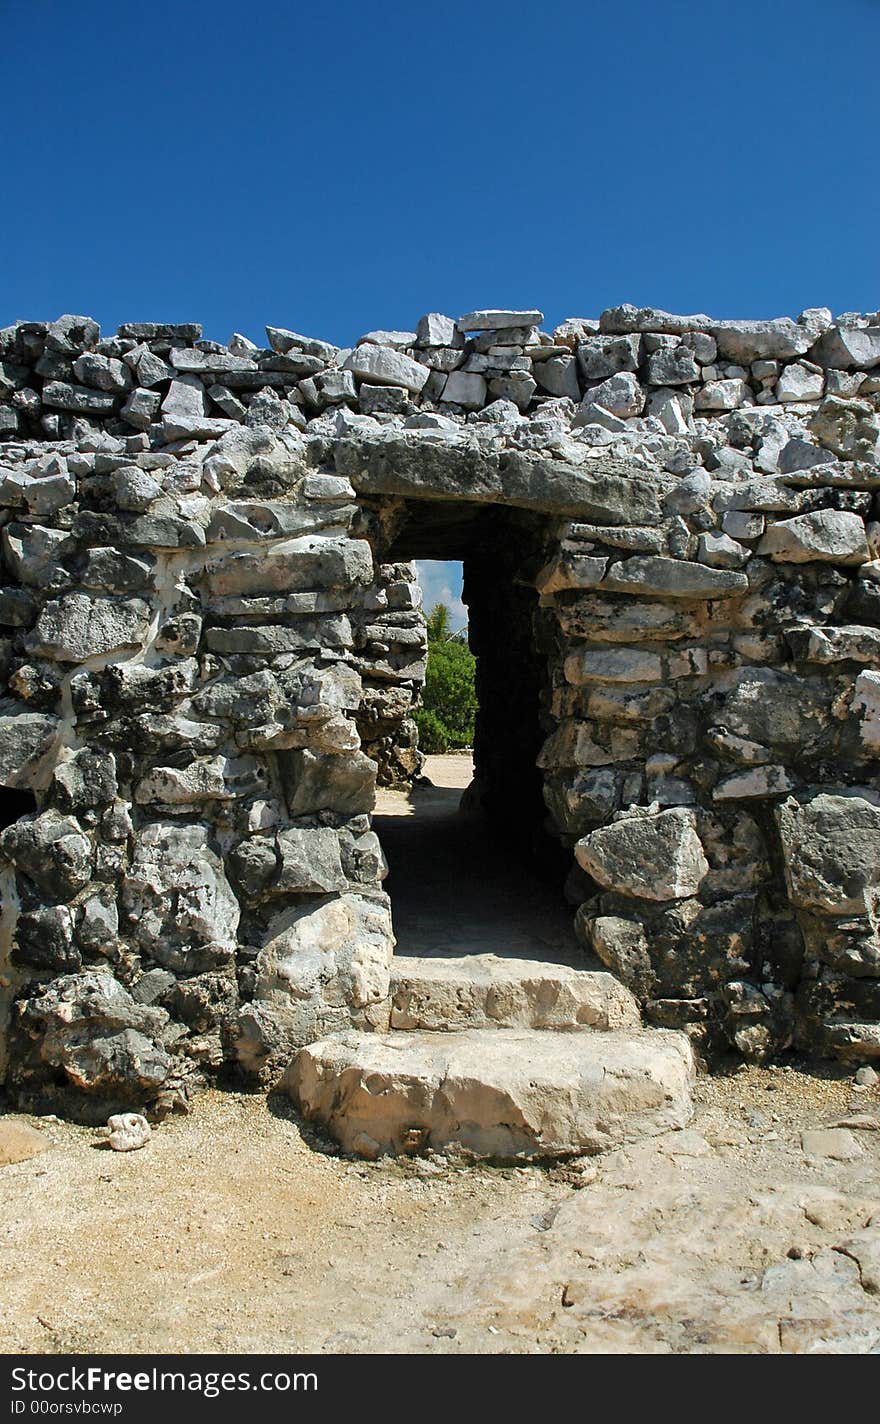 Closeup of Gateway through Ancient Mayan City Walls. Closeup of Gateway through Ancient Mayan City Walls.